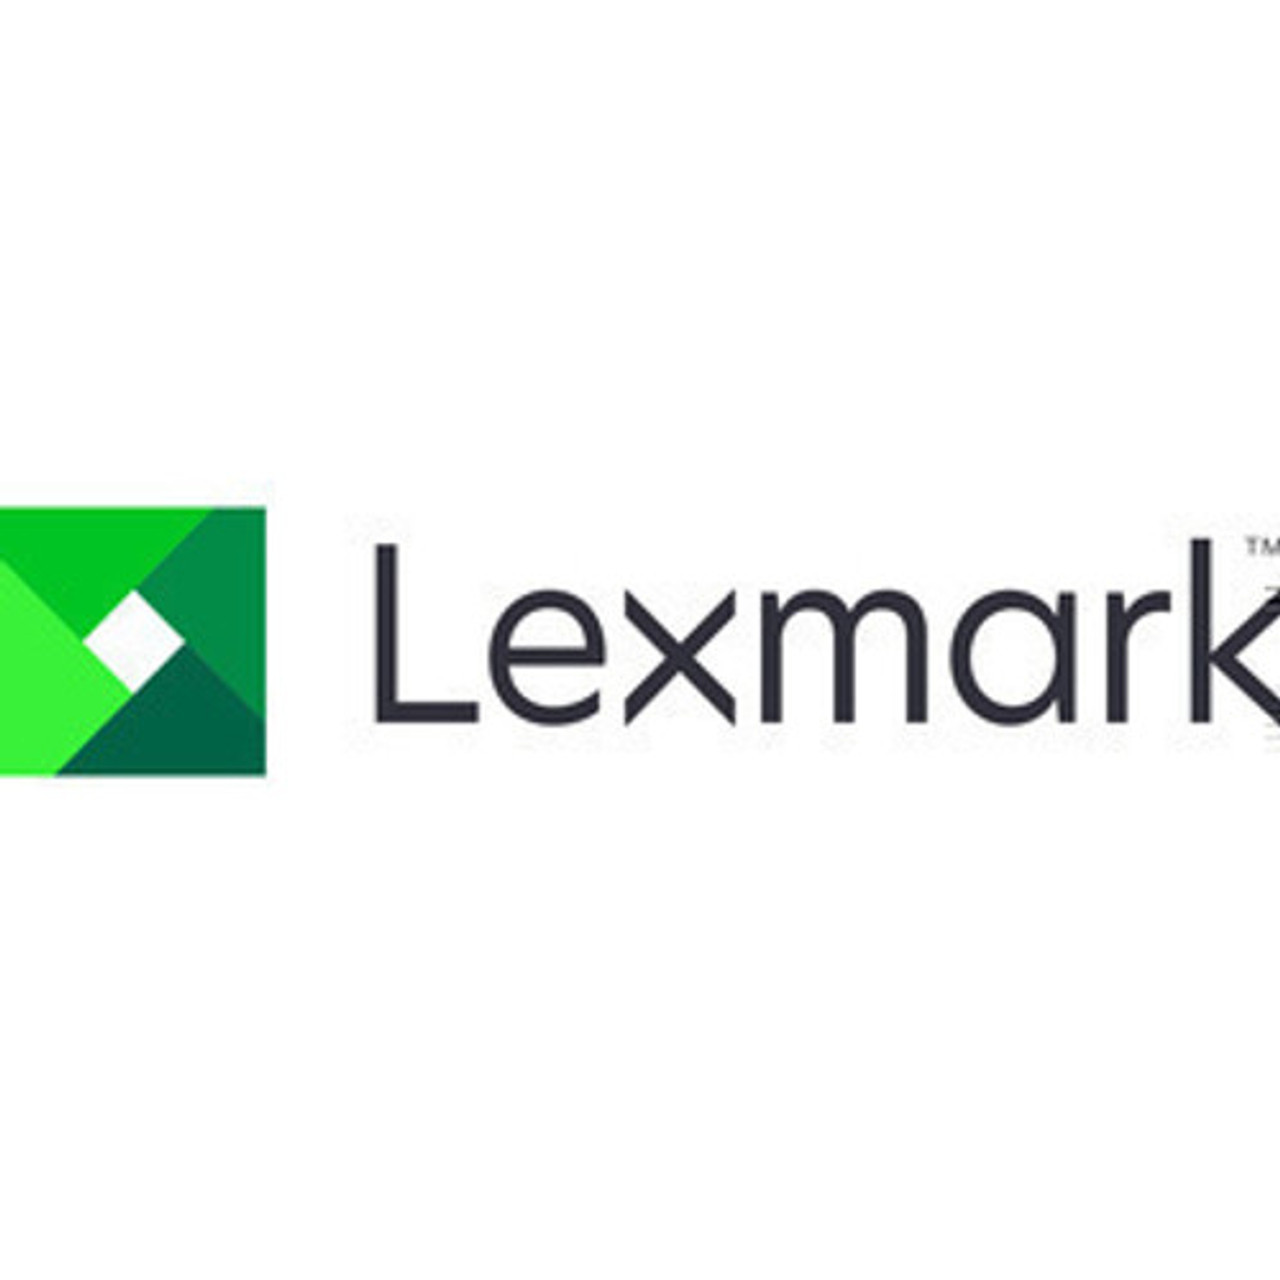 Lexmark 2 YEAR ONSITE REPAIR - RENEWAL - MS521 - 2364605